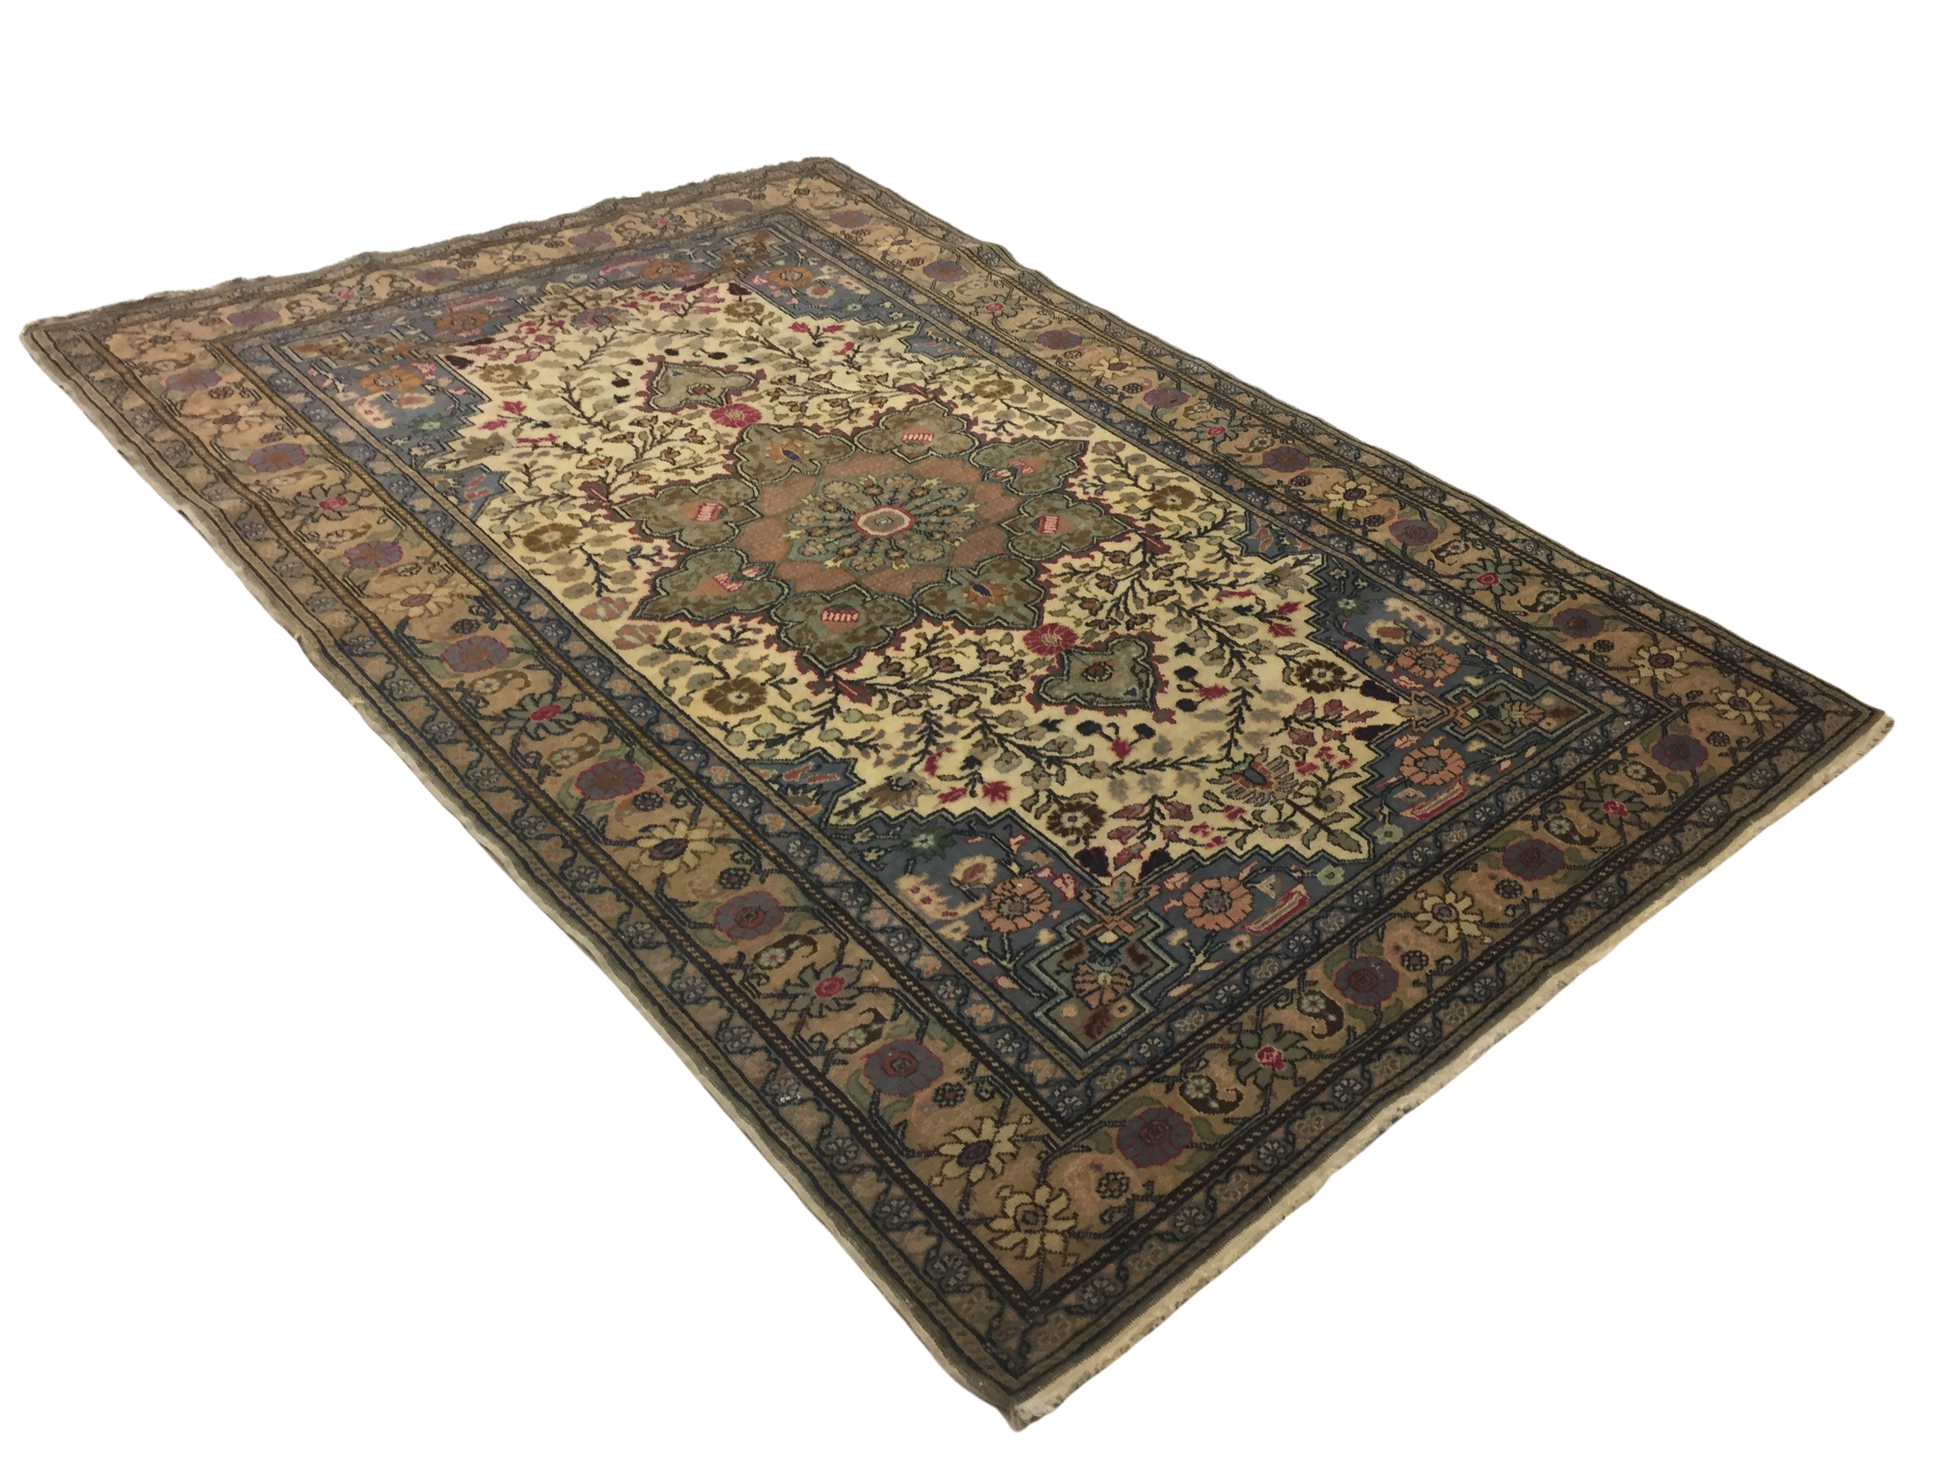 Classic Carpet 217 X 145 cm - Alfombras de Estambul -  Turkish Carpets - Alfombras de Estambul